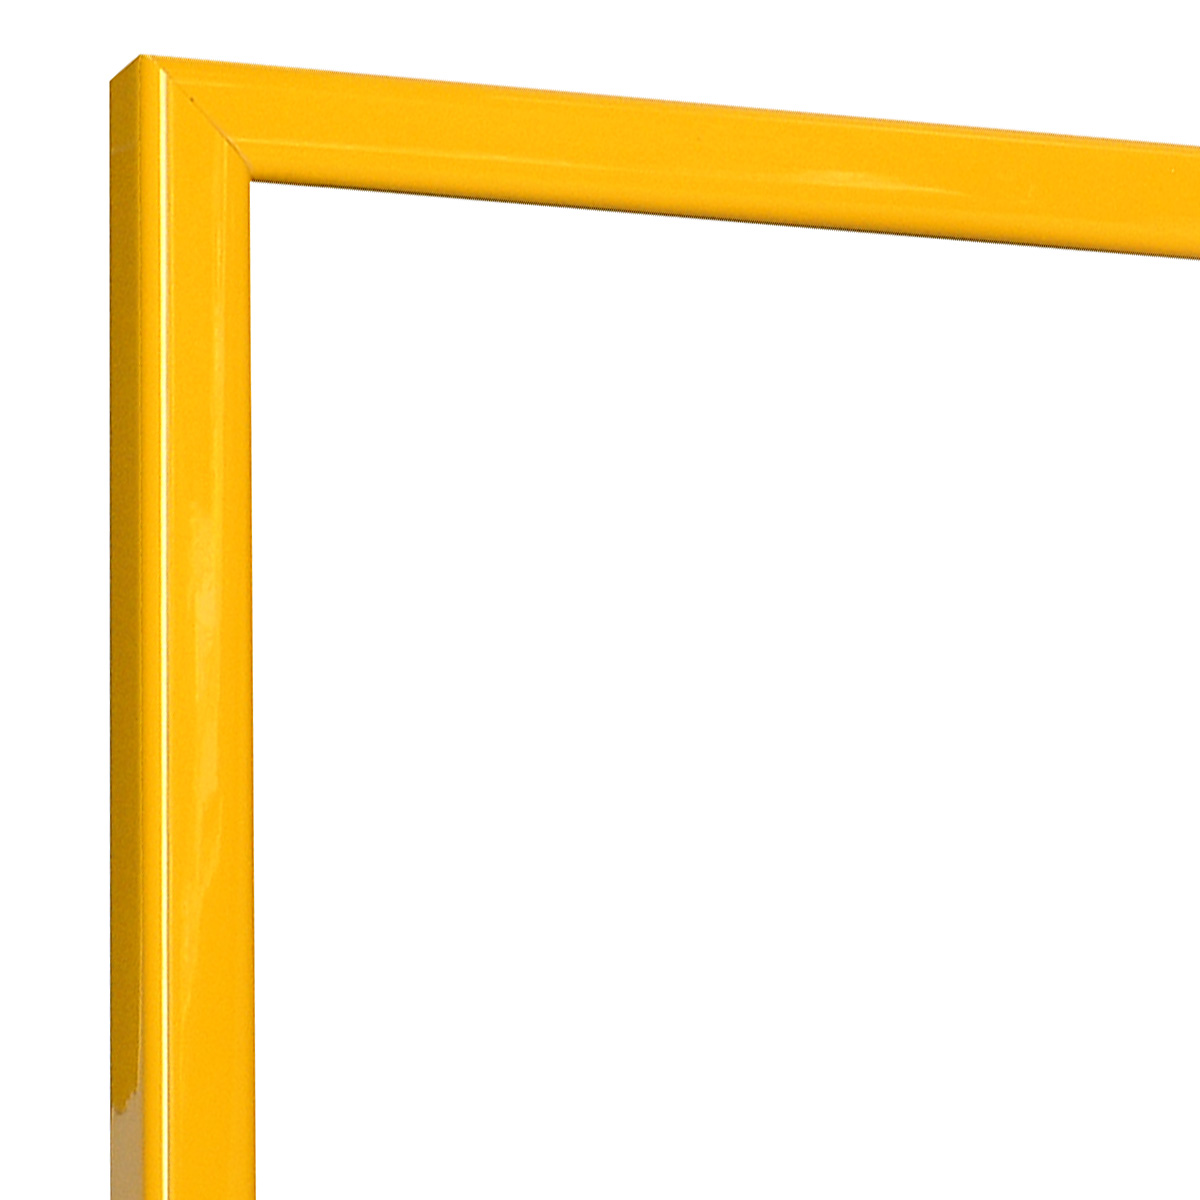 Bilderleiste keilgezinkte Pinie 14 mm breit - Gelb glänzend - Ecke